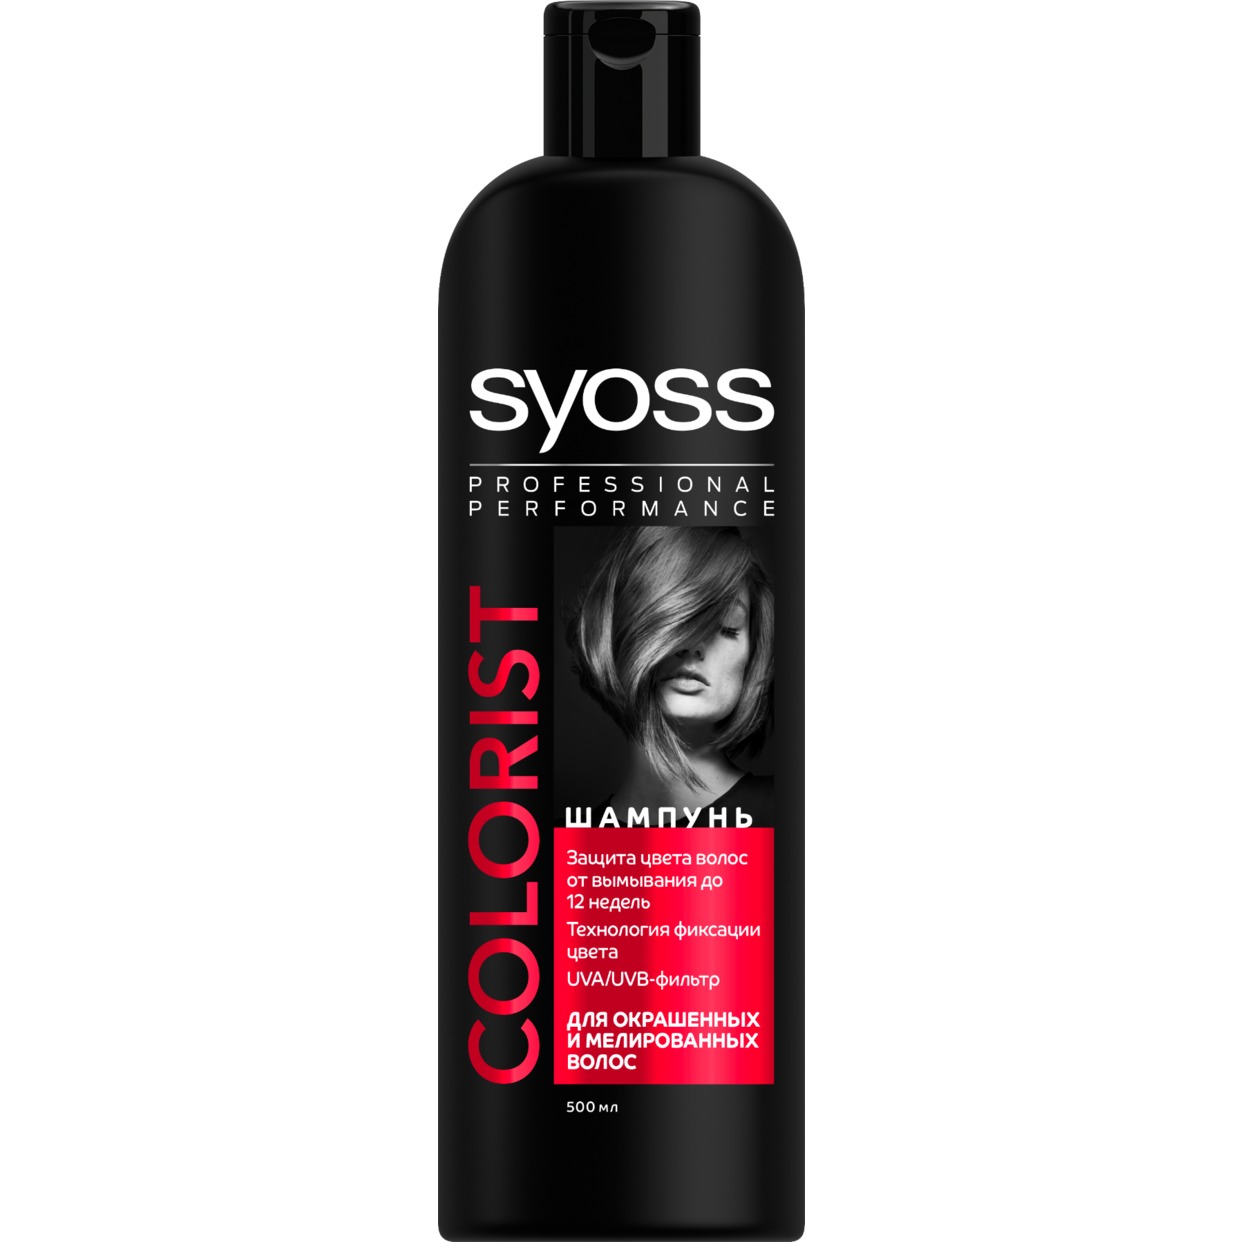 Шампунь Syoss, для окрашенных и мелированных волос, 500 мл по акции в Пятерочке